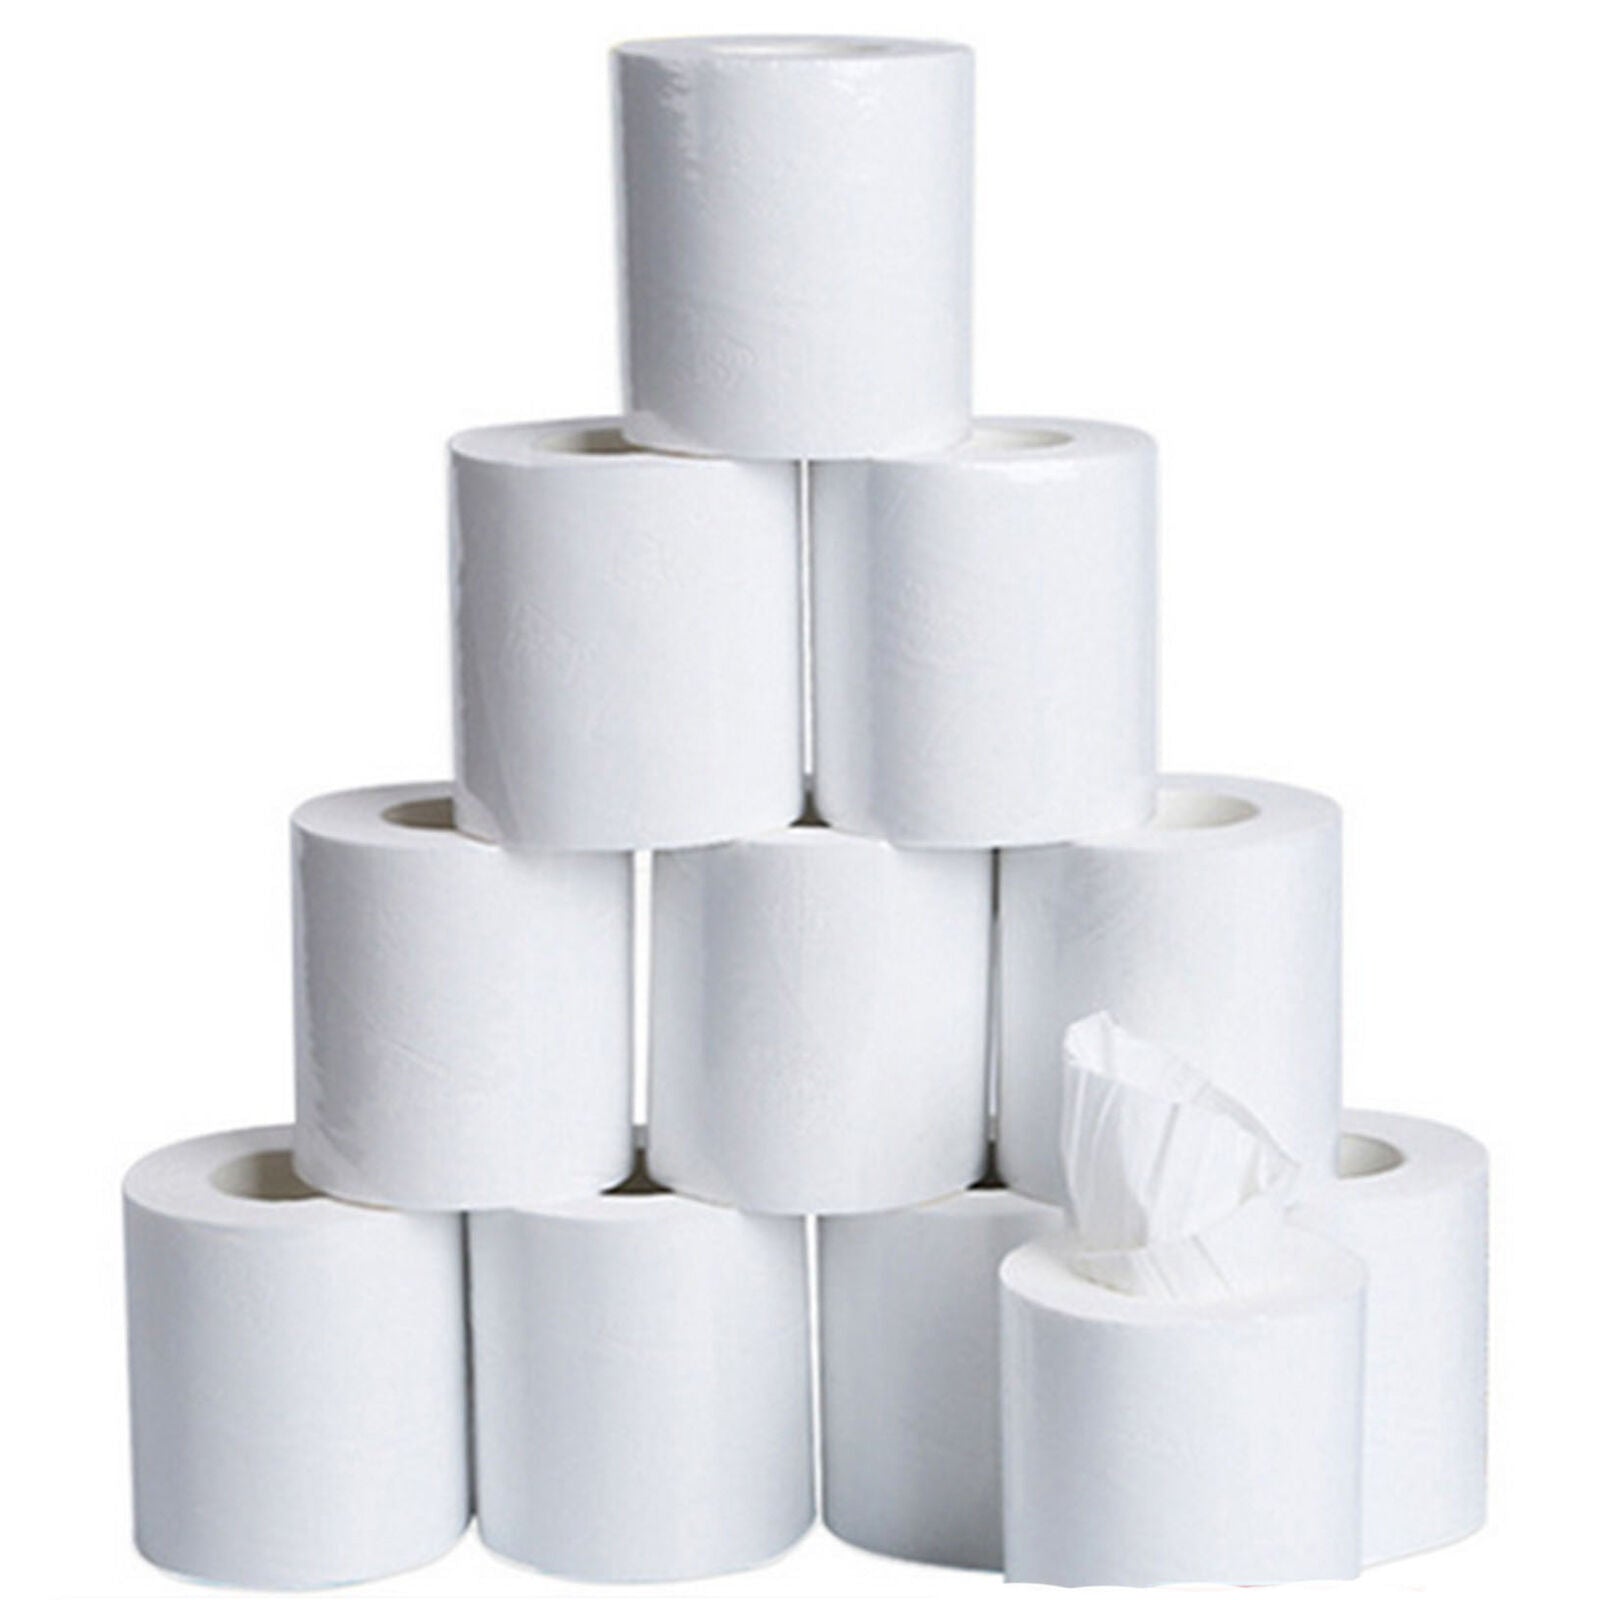 Household 10 Rolls Paper Bulk Rolls Bath Tissue Bathroom White Soft 3 Ply